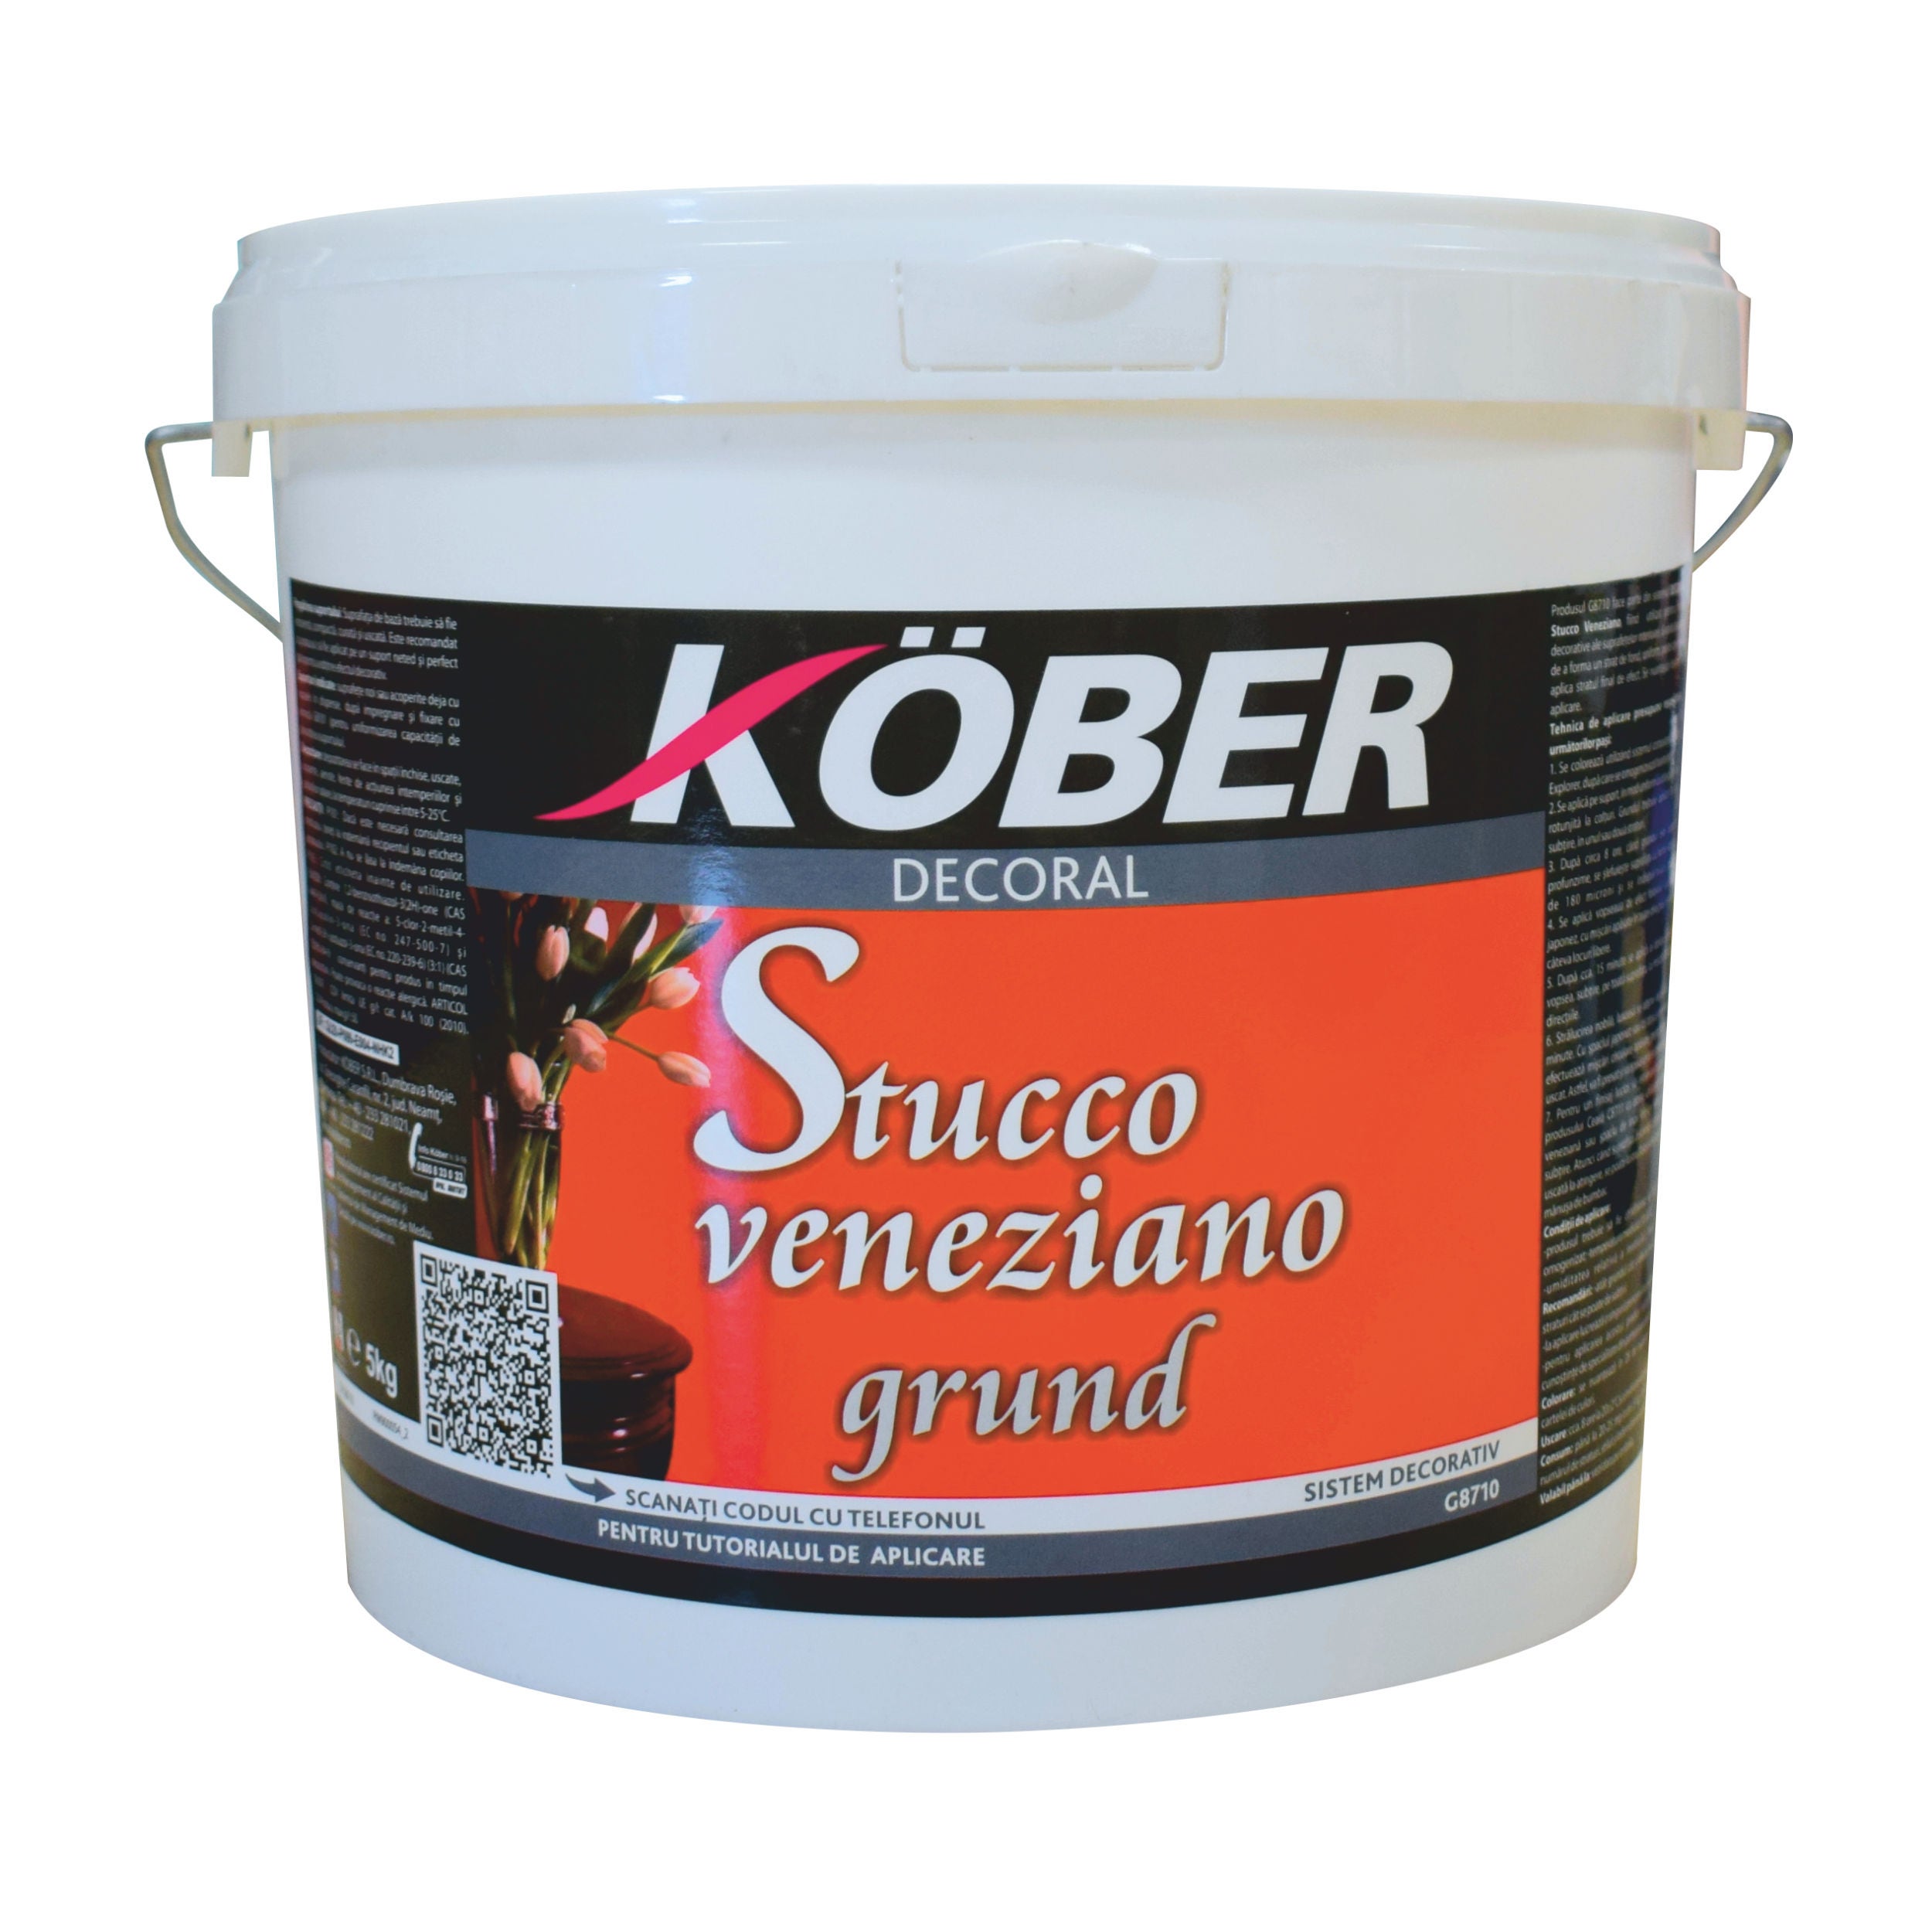 Amorsa perete Kober Stucco Veneziano G8710, interior, roz fermecator, 5 kg